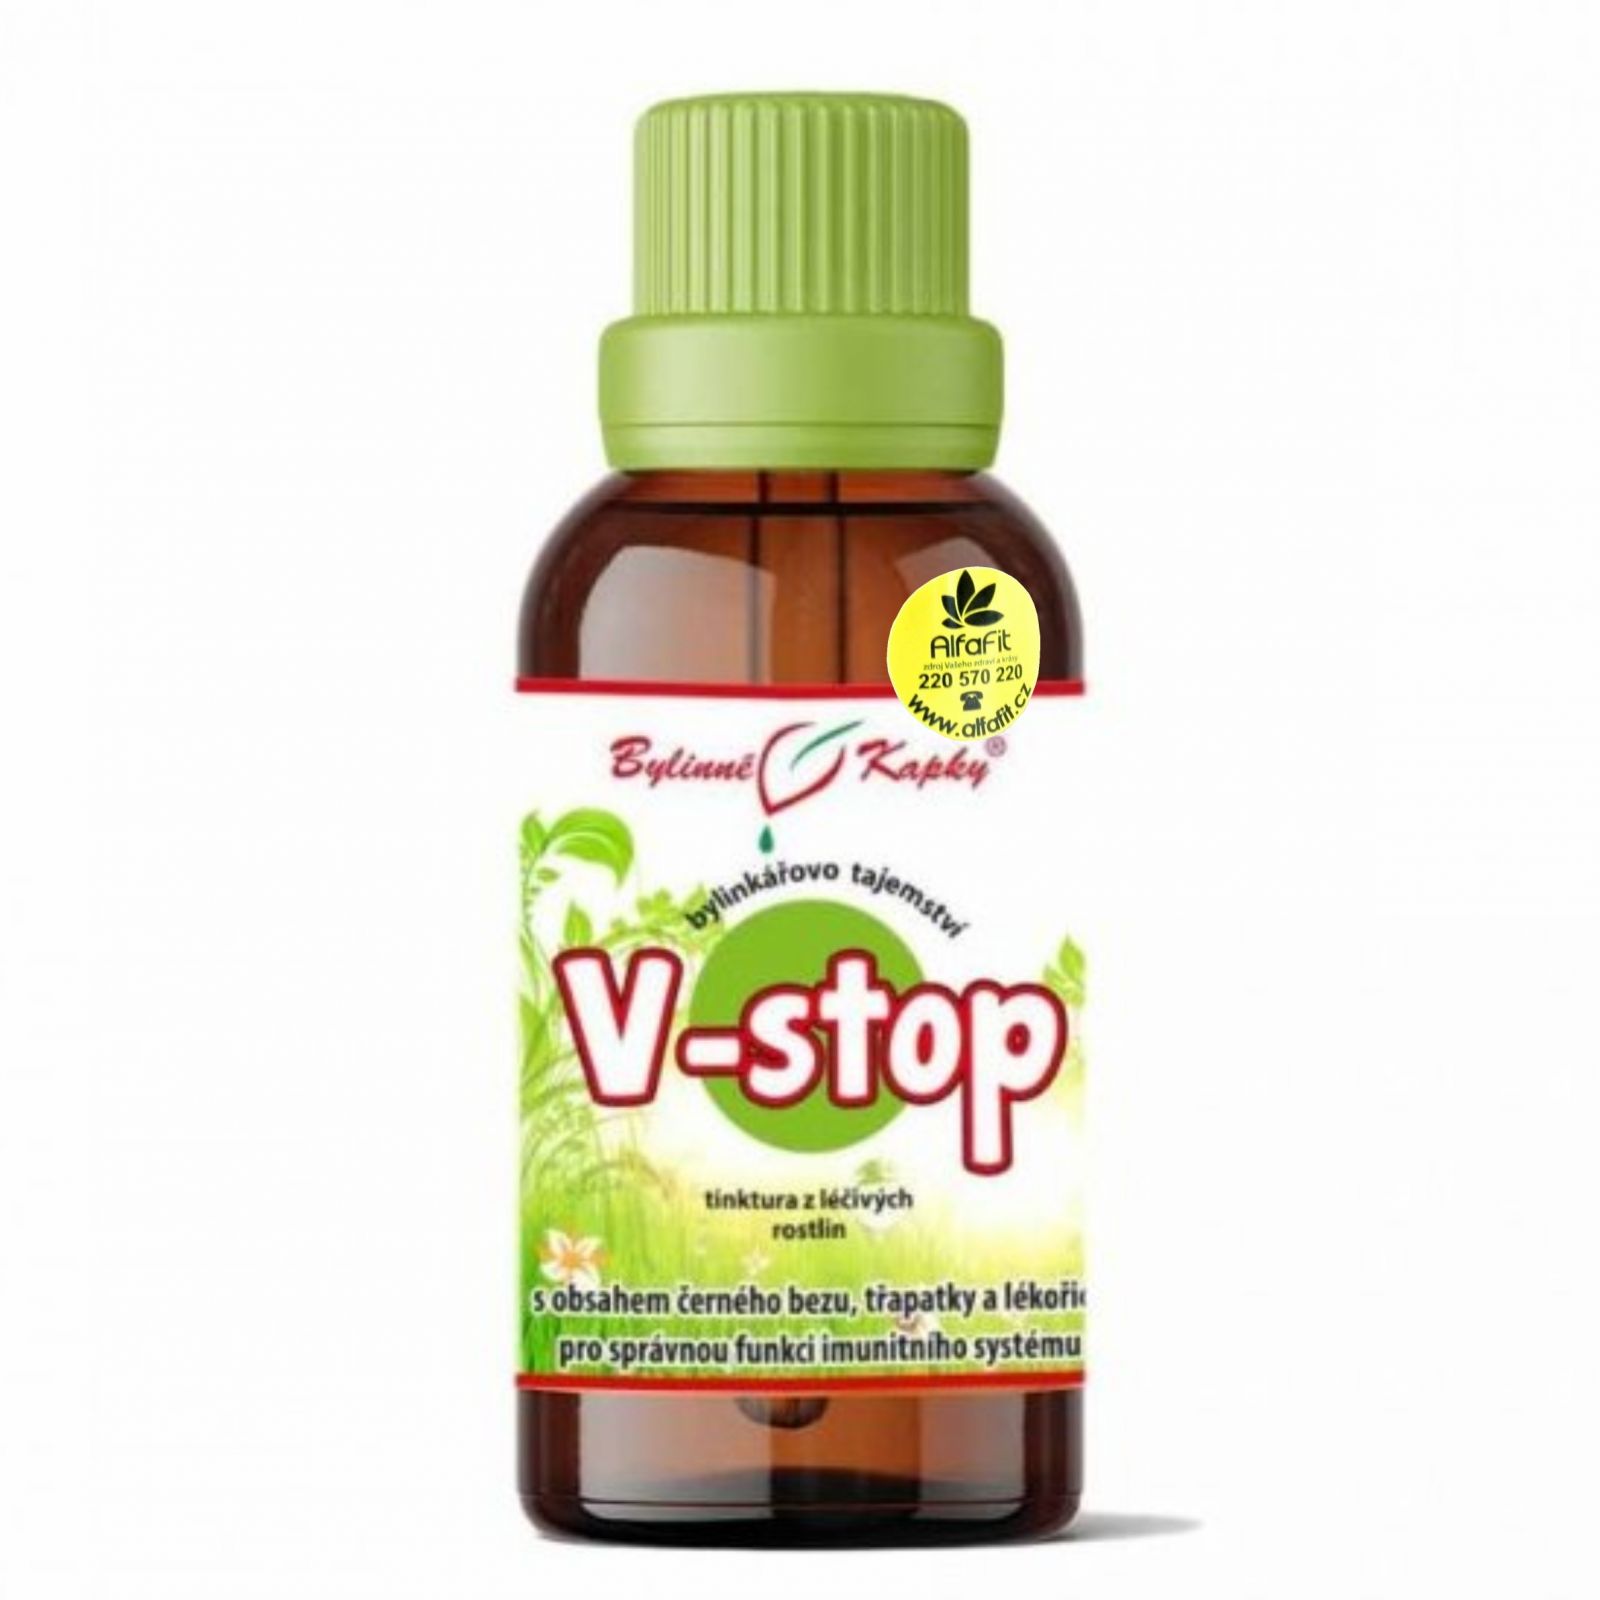 Bylinné kapky V-stop (Virustop) 50 ml